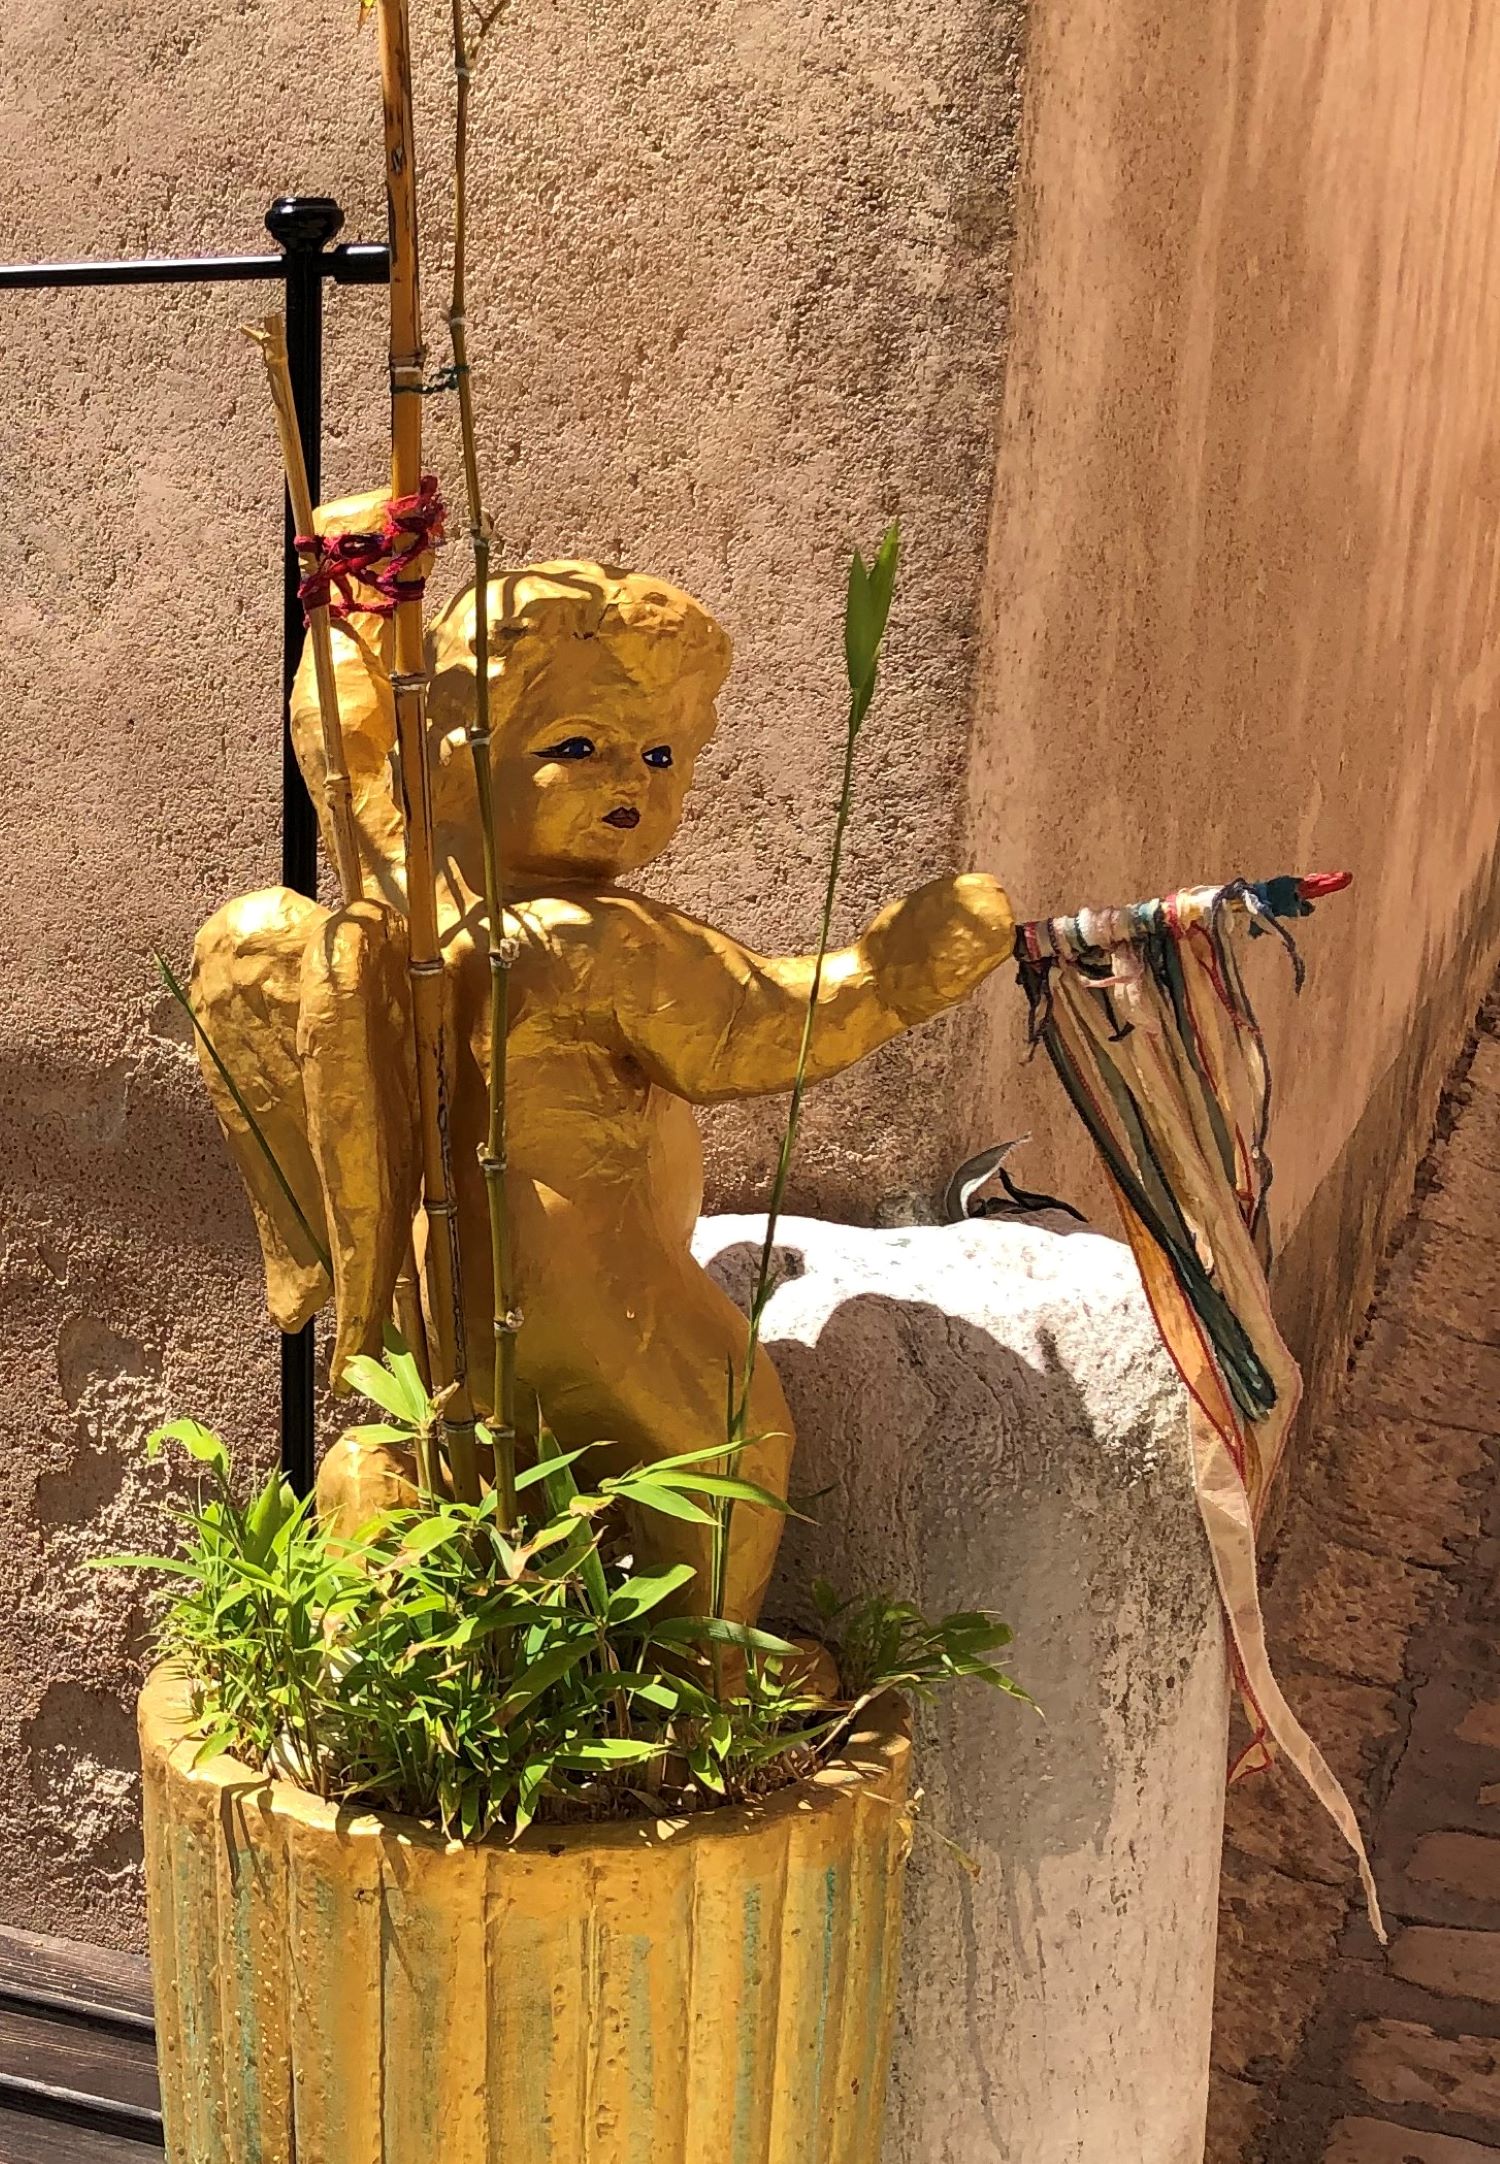 Dekoration "Goldener Engel" in einem Blumentopf in einer Gasse